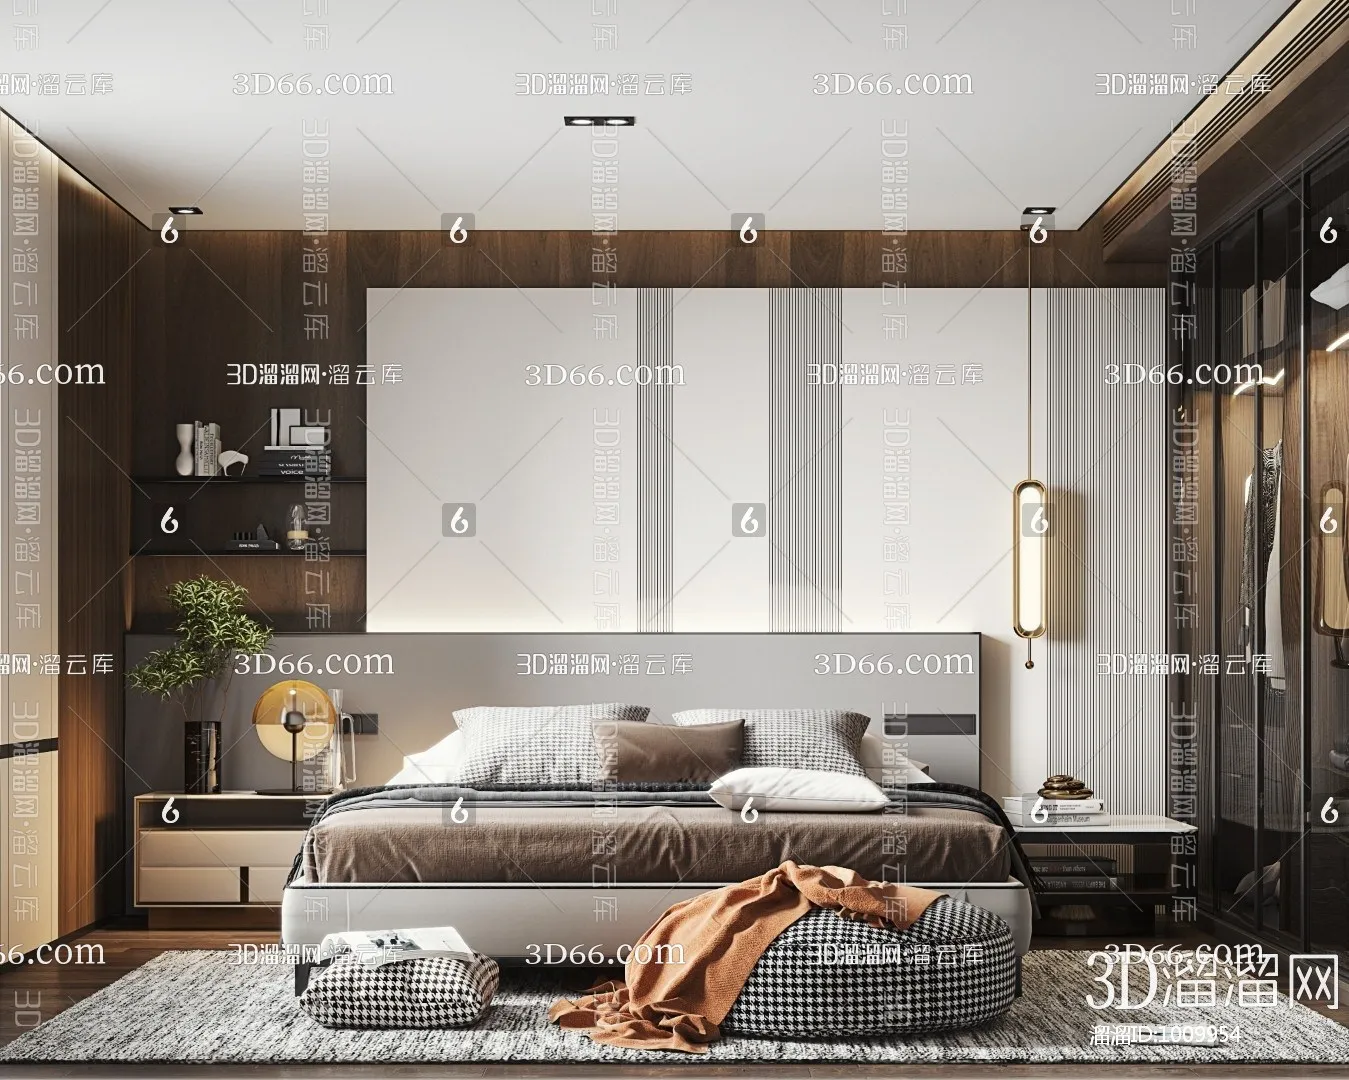 Bedroom 3D Scenes – 0255